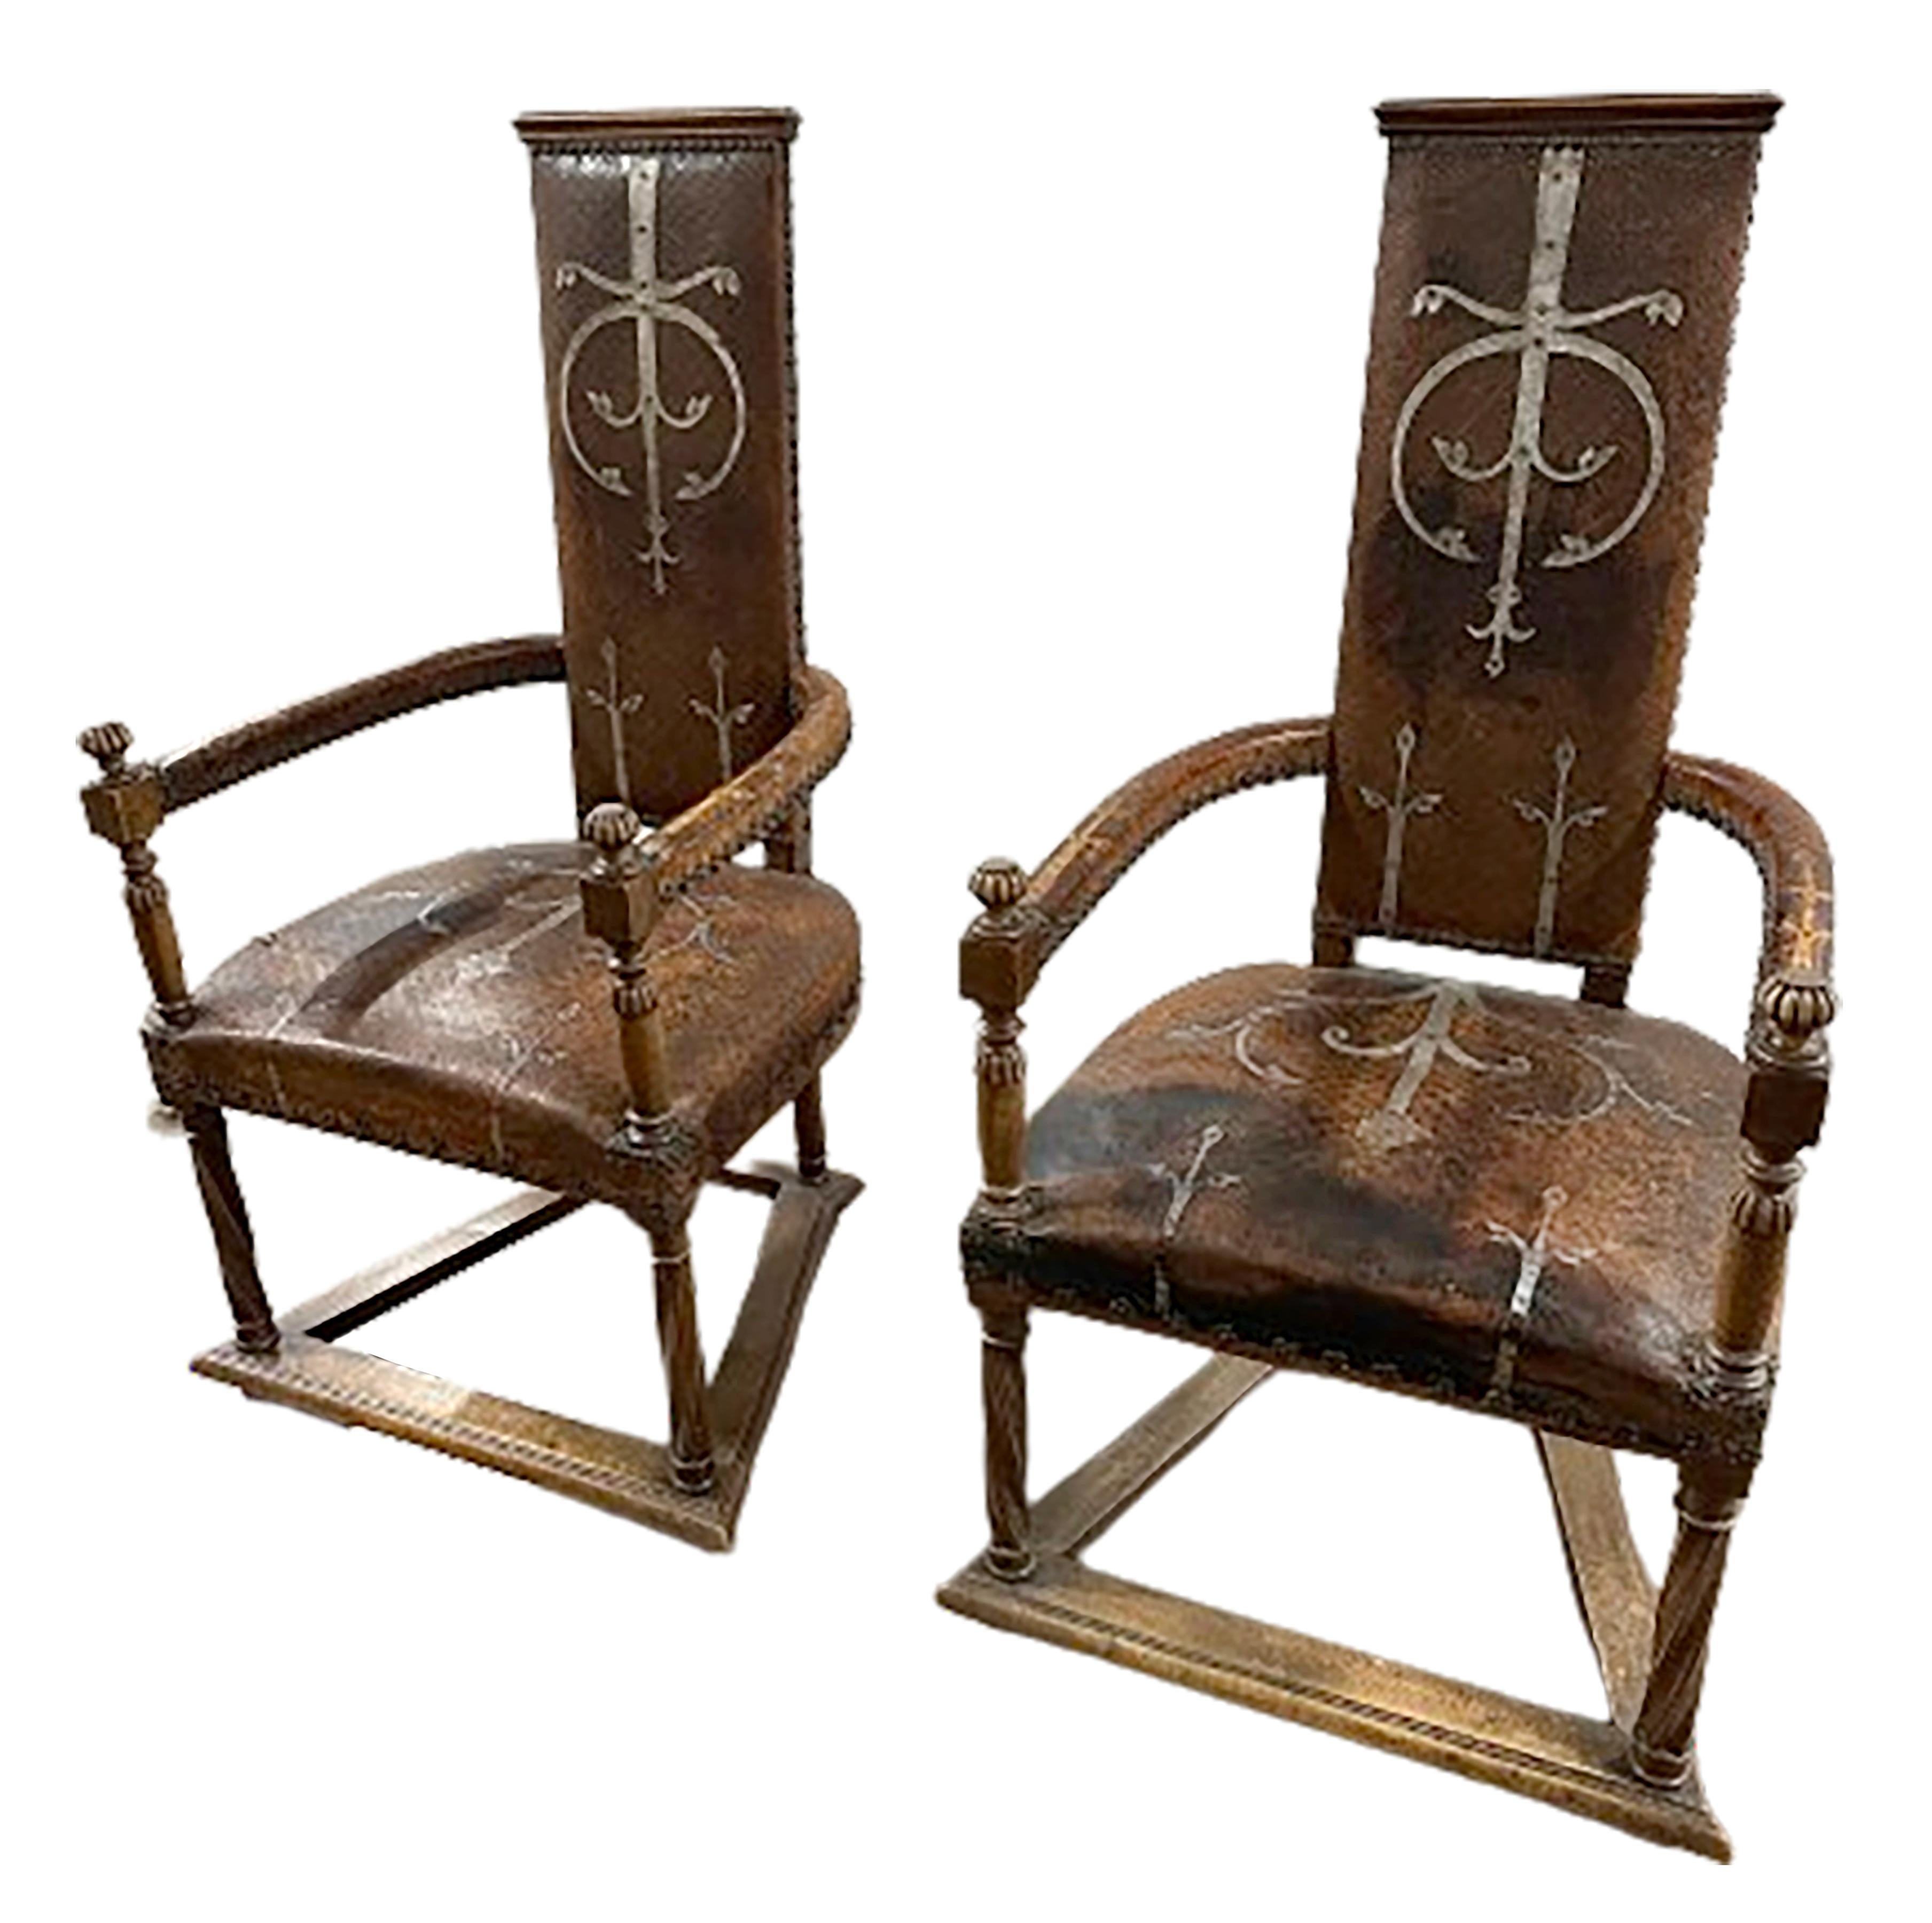 Une paire exquise de fauteuils espagnols en cuir clouté du milieu du 19ème siècle. Avec ses dossiers hauts et minces couronnés d'arcs subtils et ses grands bras pivotants, chaque chaise est ornée d'un revêtement en cuir couleur chocolat gaufré et